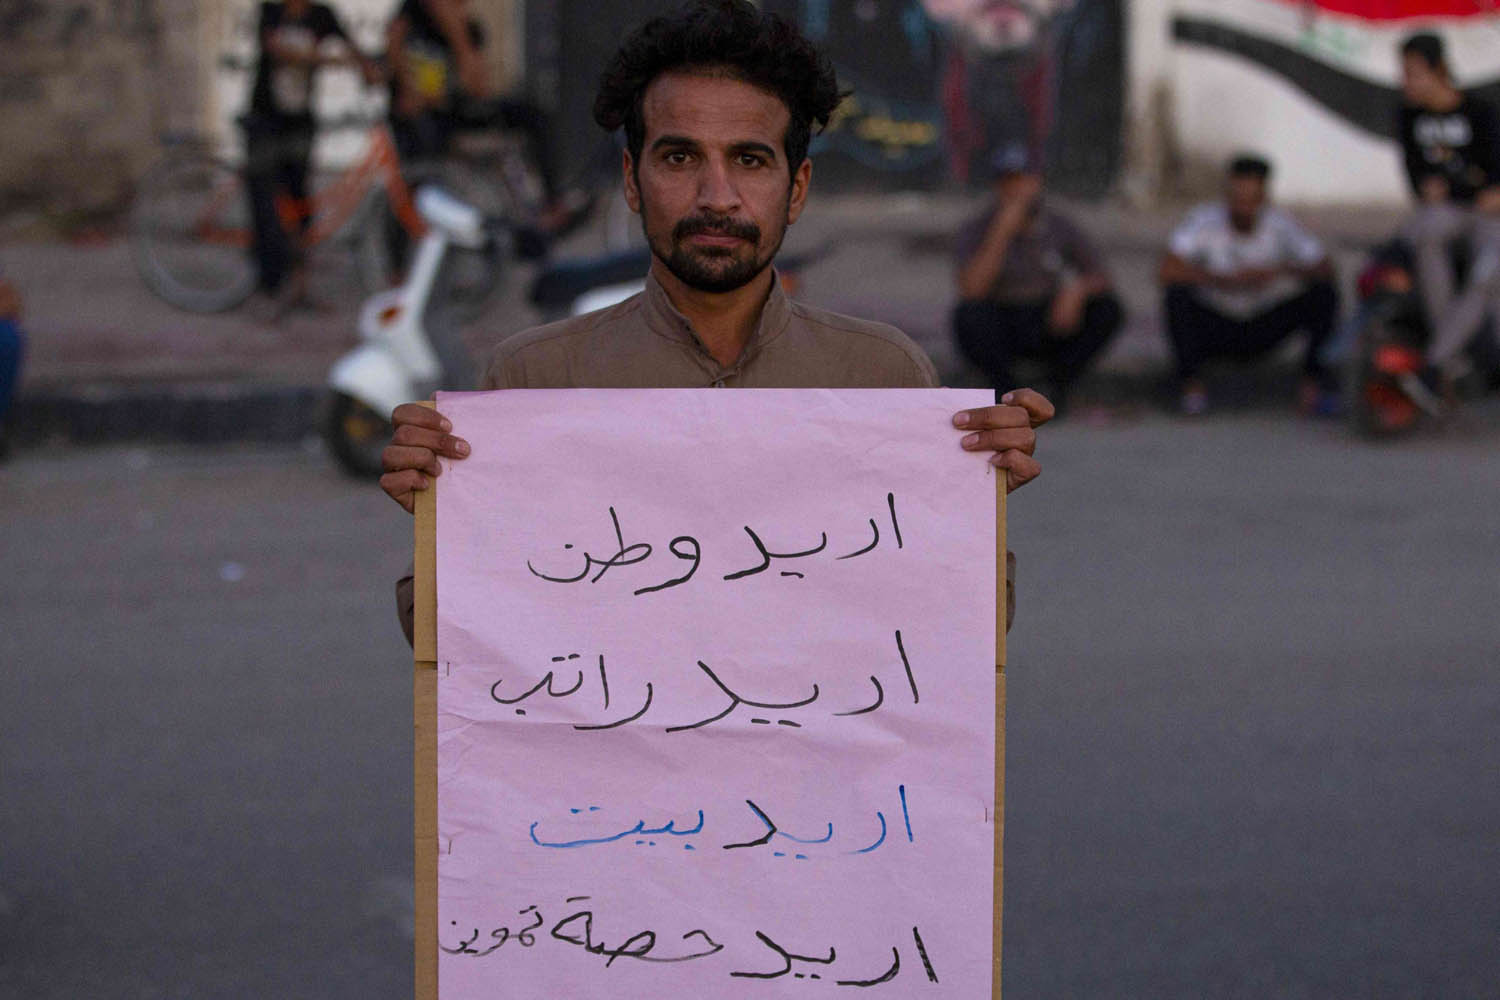 عراقي يحتج على الحكومة وتوزيعها الموارد